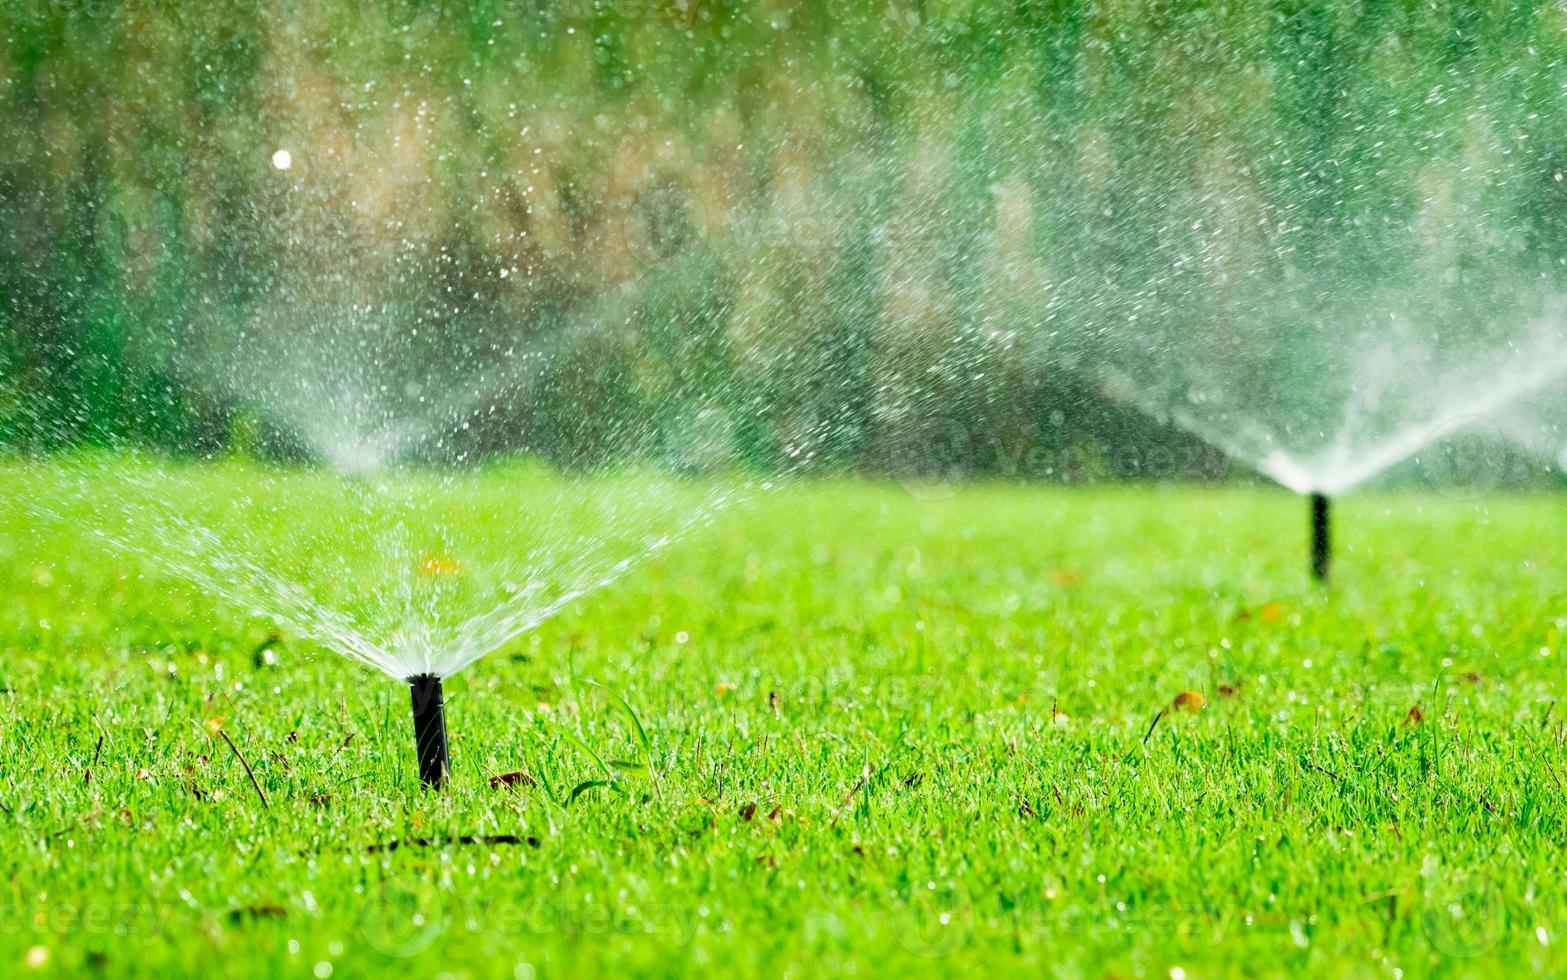 Automatischer Rasensprenger, der grünes Gras bewässert. Regner mit automatischem System. gartenbewässerungssystem bewässerung rasen. Wassereinsparung oder Wassereinsparung durch Sprinkleranlage mit verstellbarem Kopf. foto